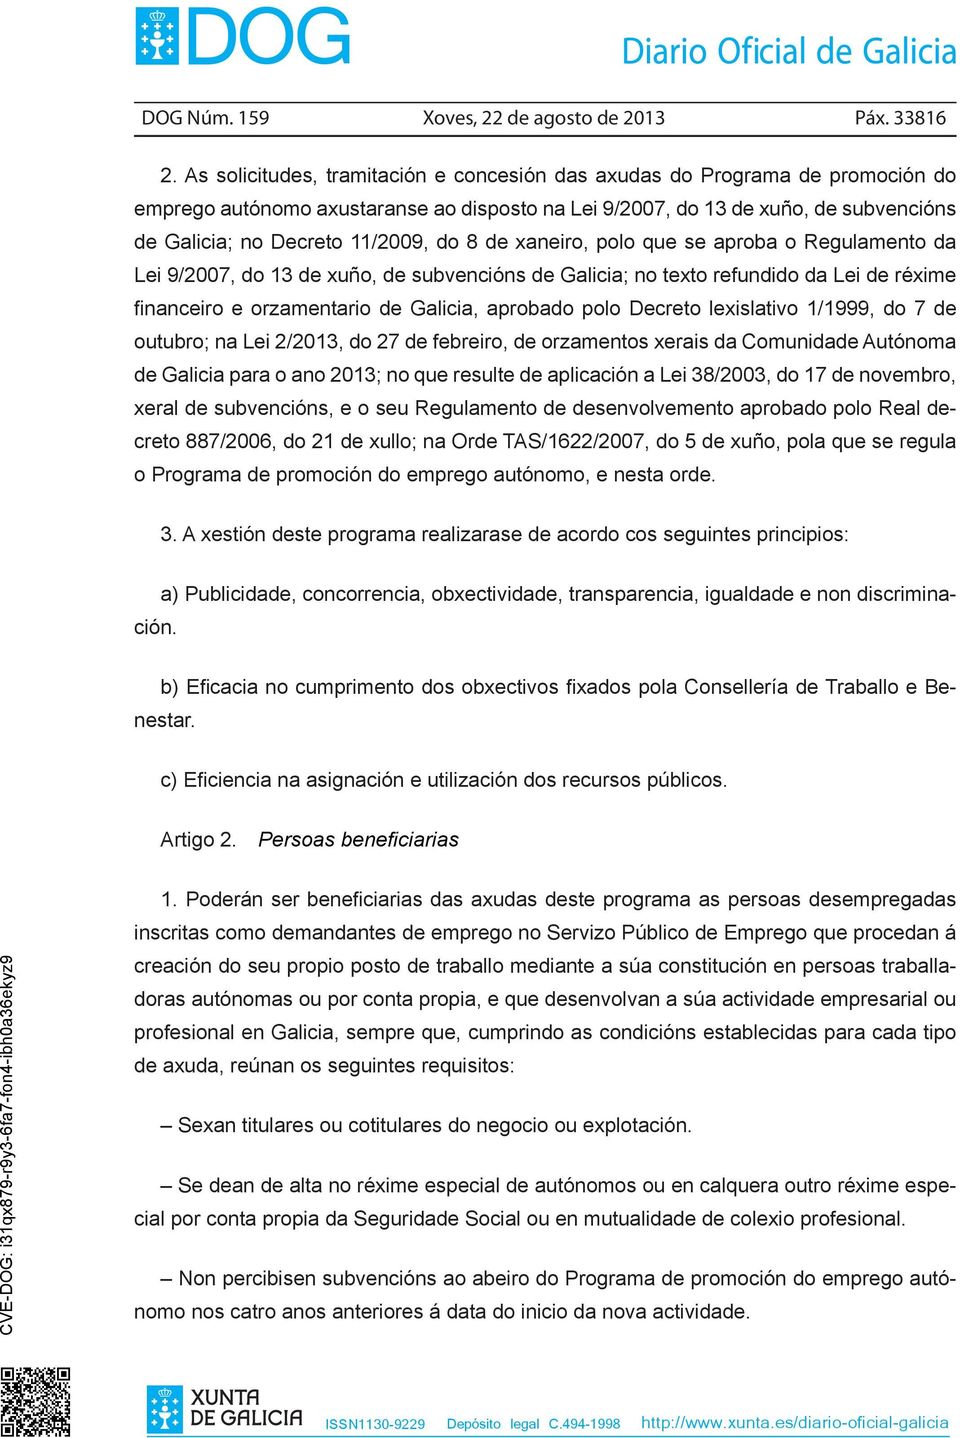 8 de xaneiro, polo que se aproba o Regulamento da Lei 9/2007, do 13 de xuño, de subvencións de Galicia; no texto refundido da Lei de réxime financeiro e orzamentario de Galicia, aprobado polo Decreto